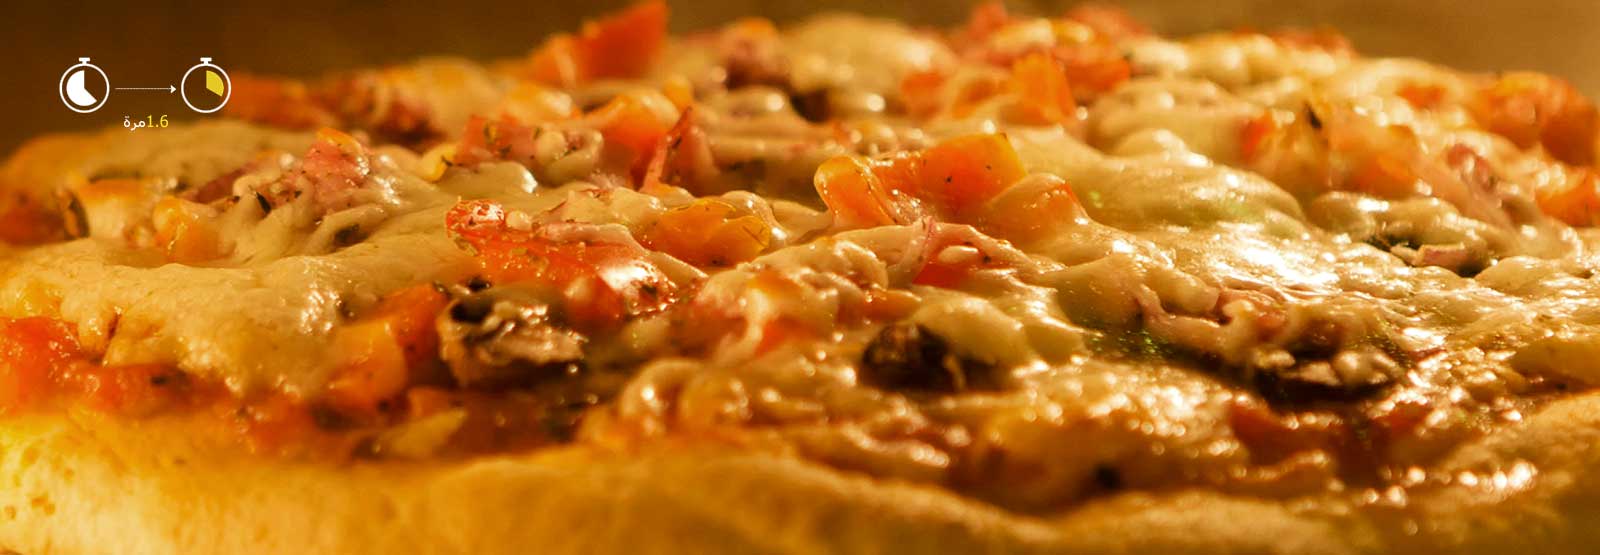 يتم تسخين البيتزا بسرعة في الميكروويف.